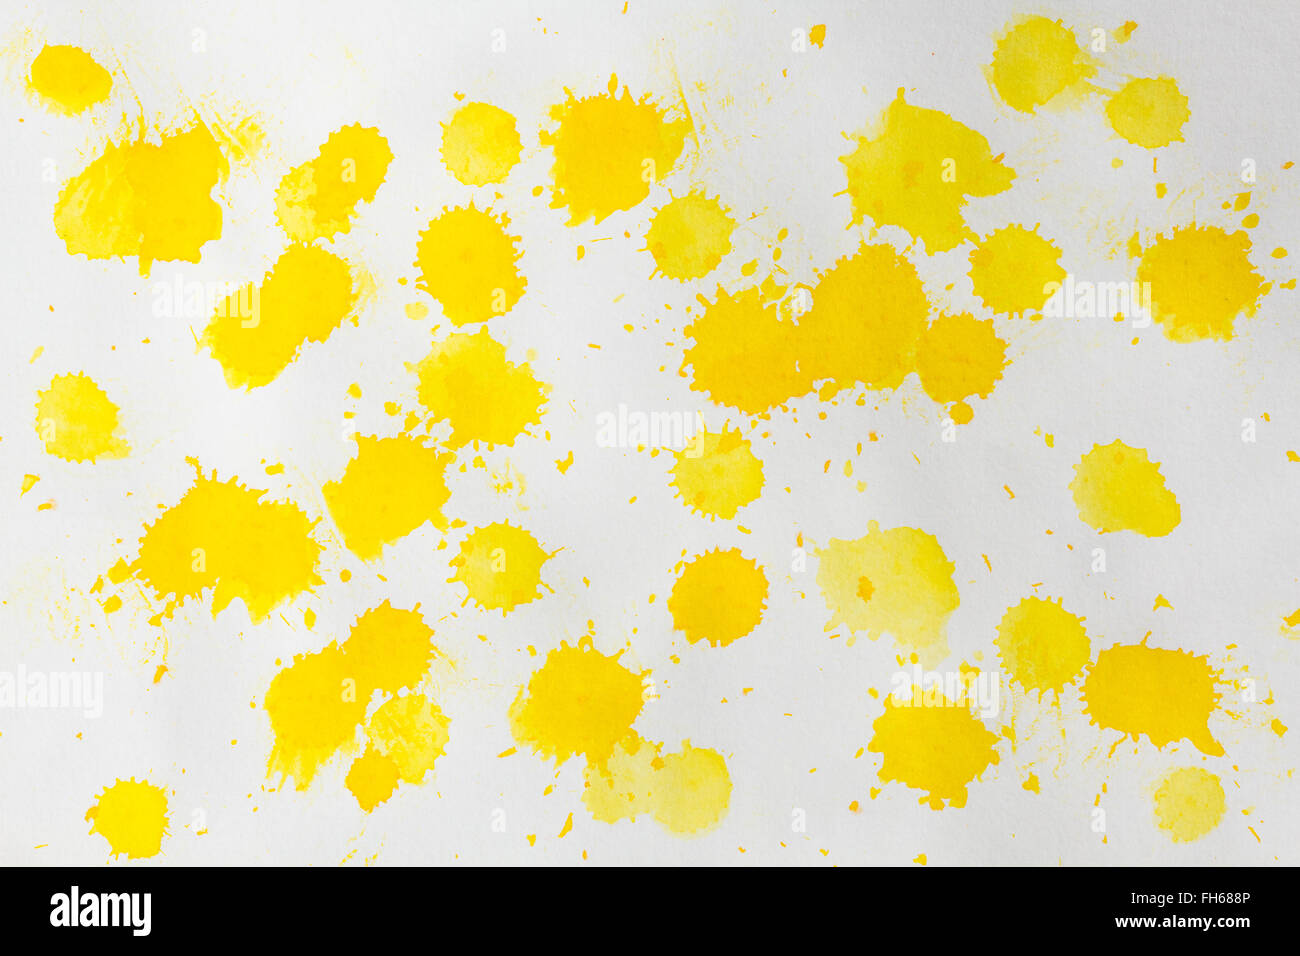 Aquarell gelben Spritzer Abstract Am weißen grobkörniges Papier. Design Element. Als Hintergrund verwenden. Stockfoto